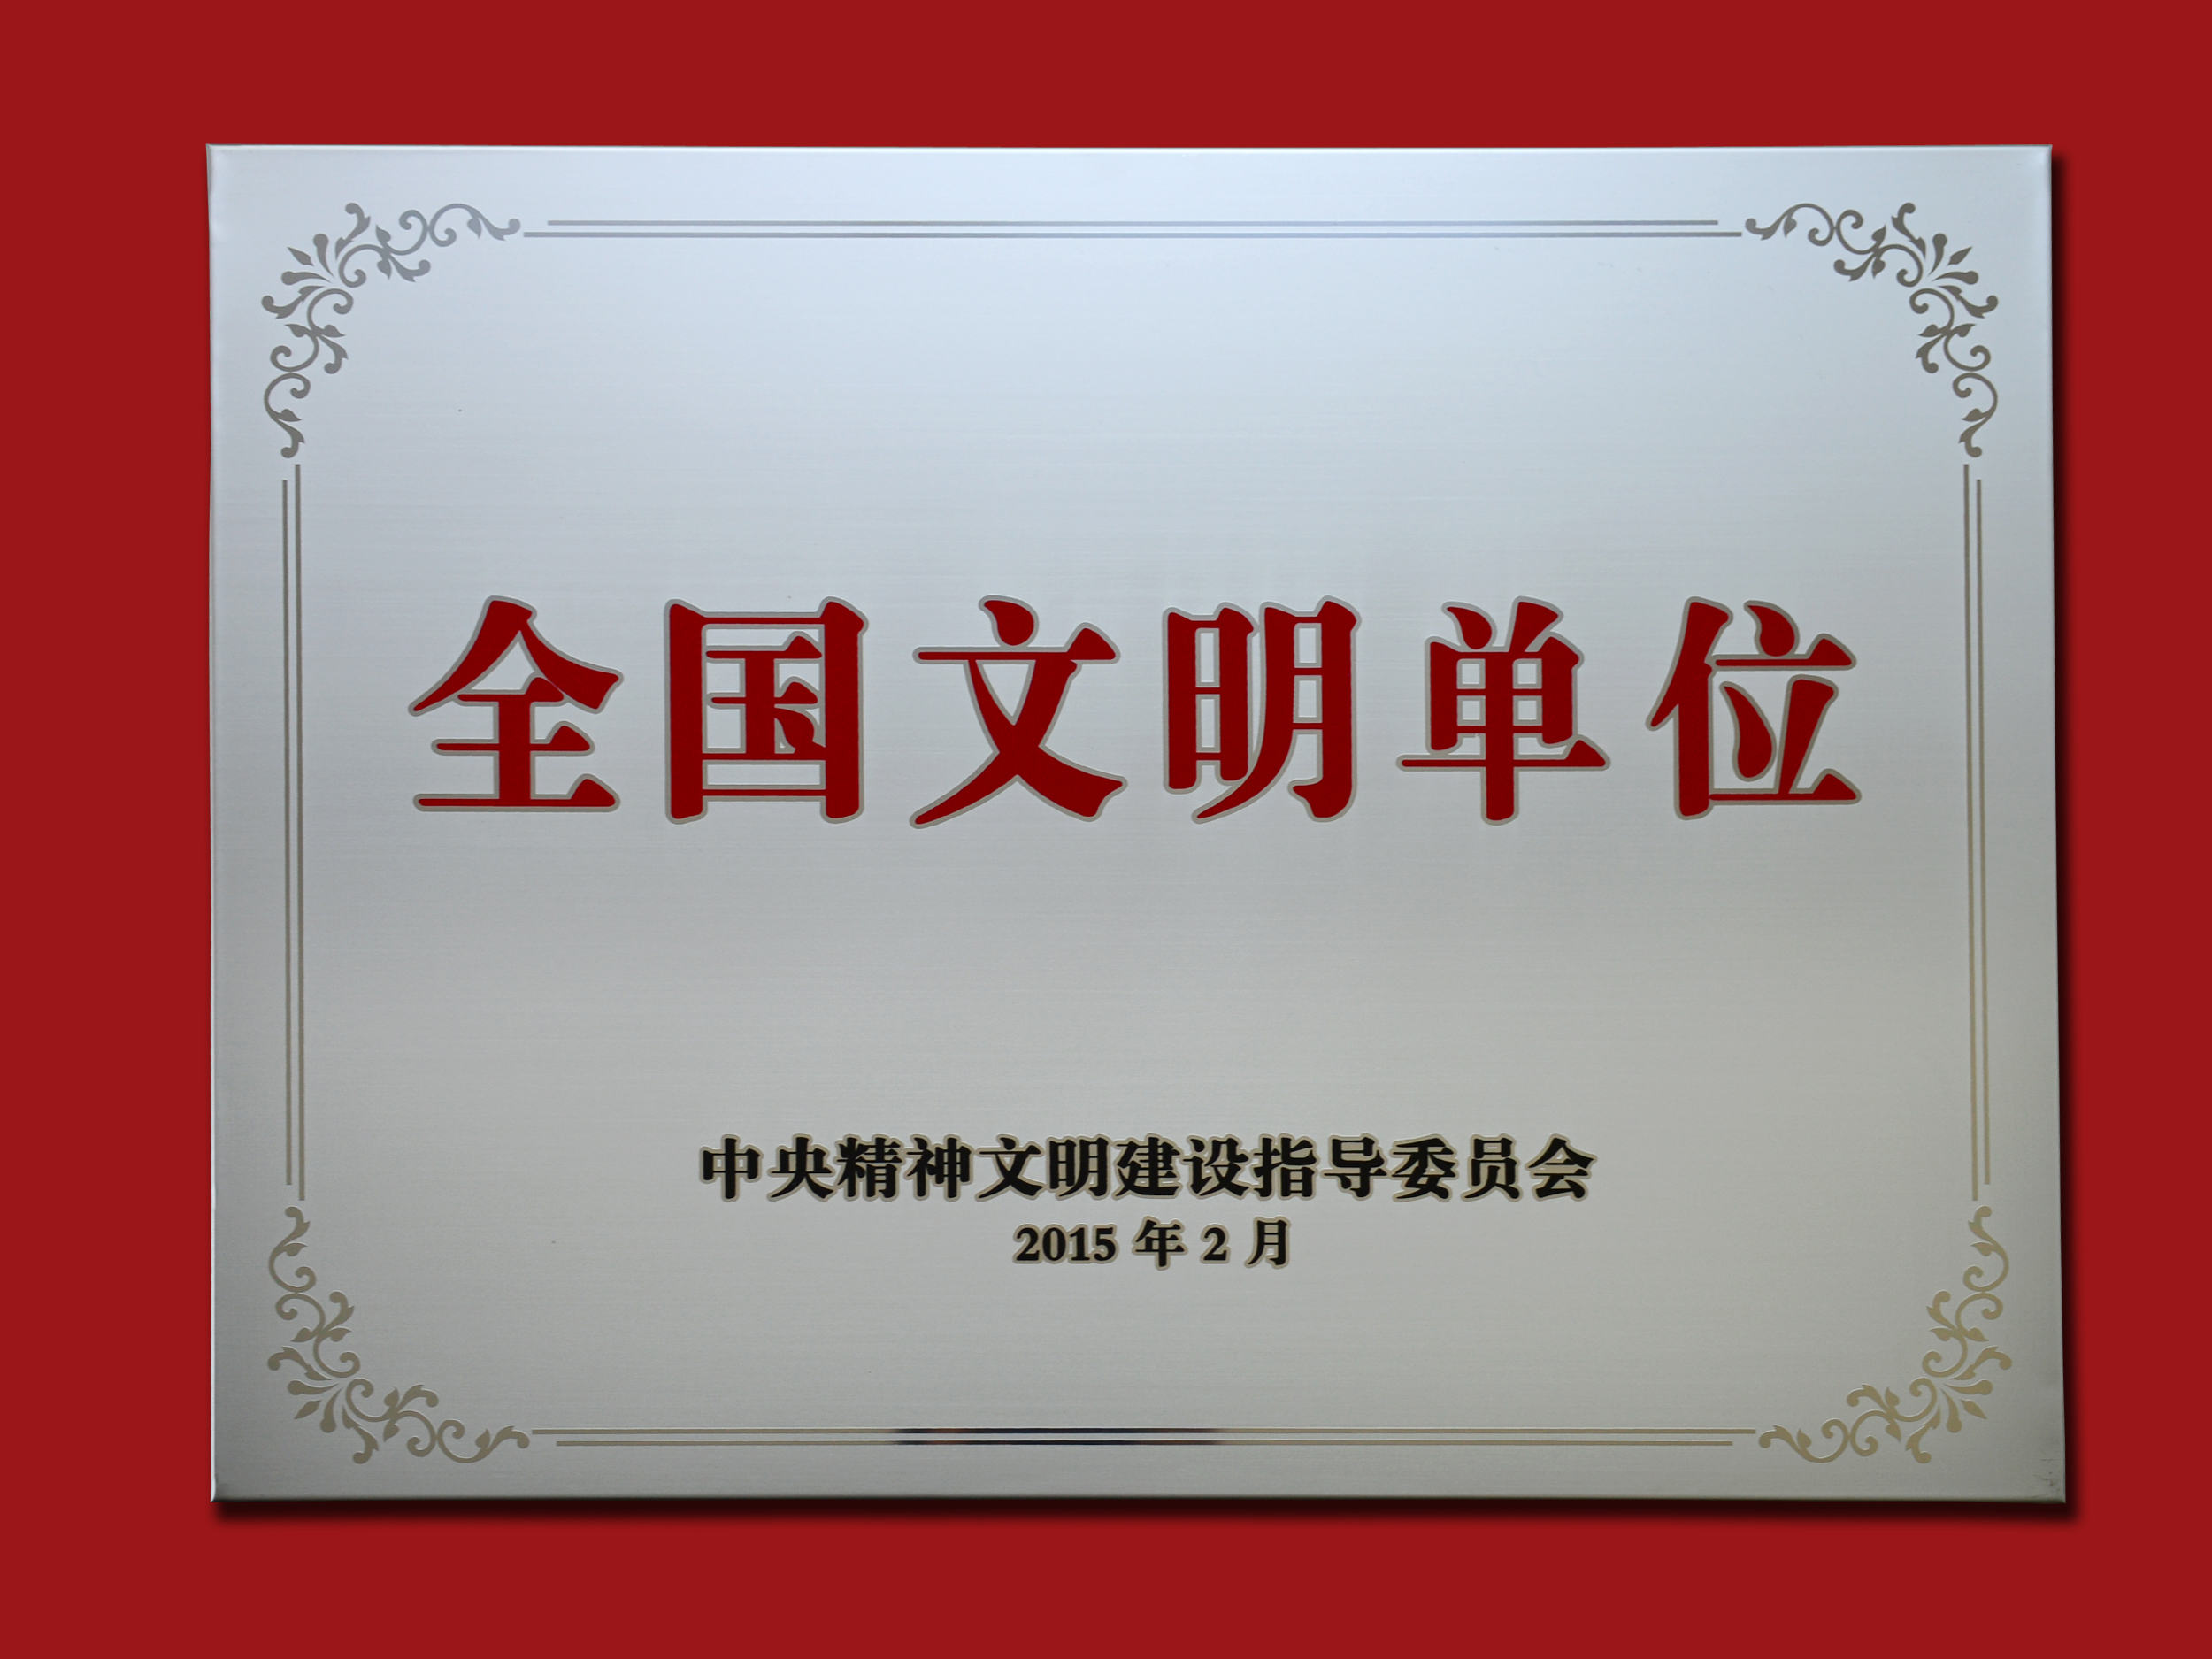 2015年2月公司荣获“全国文明单位”称号.jpg